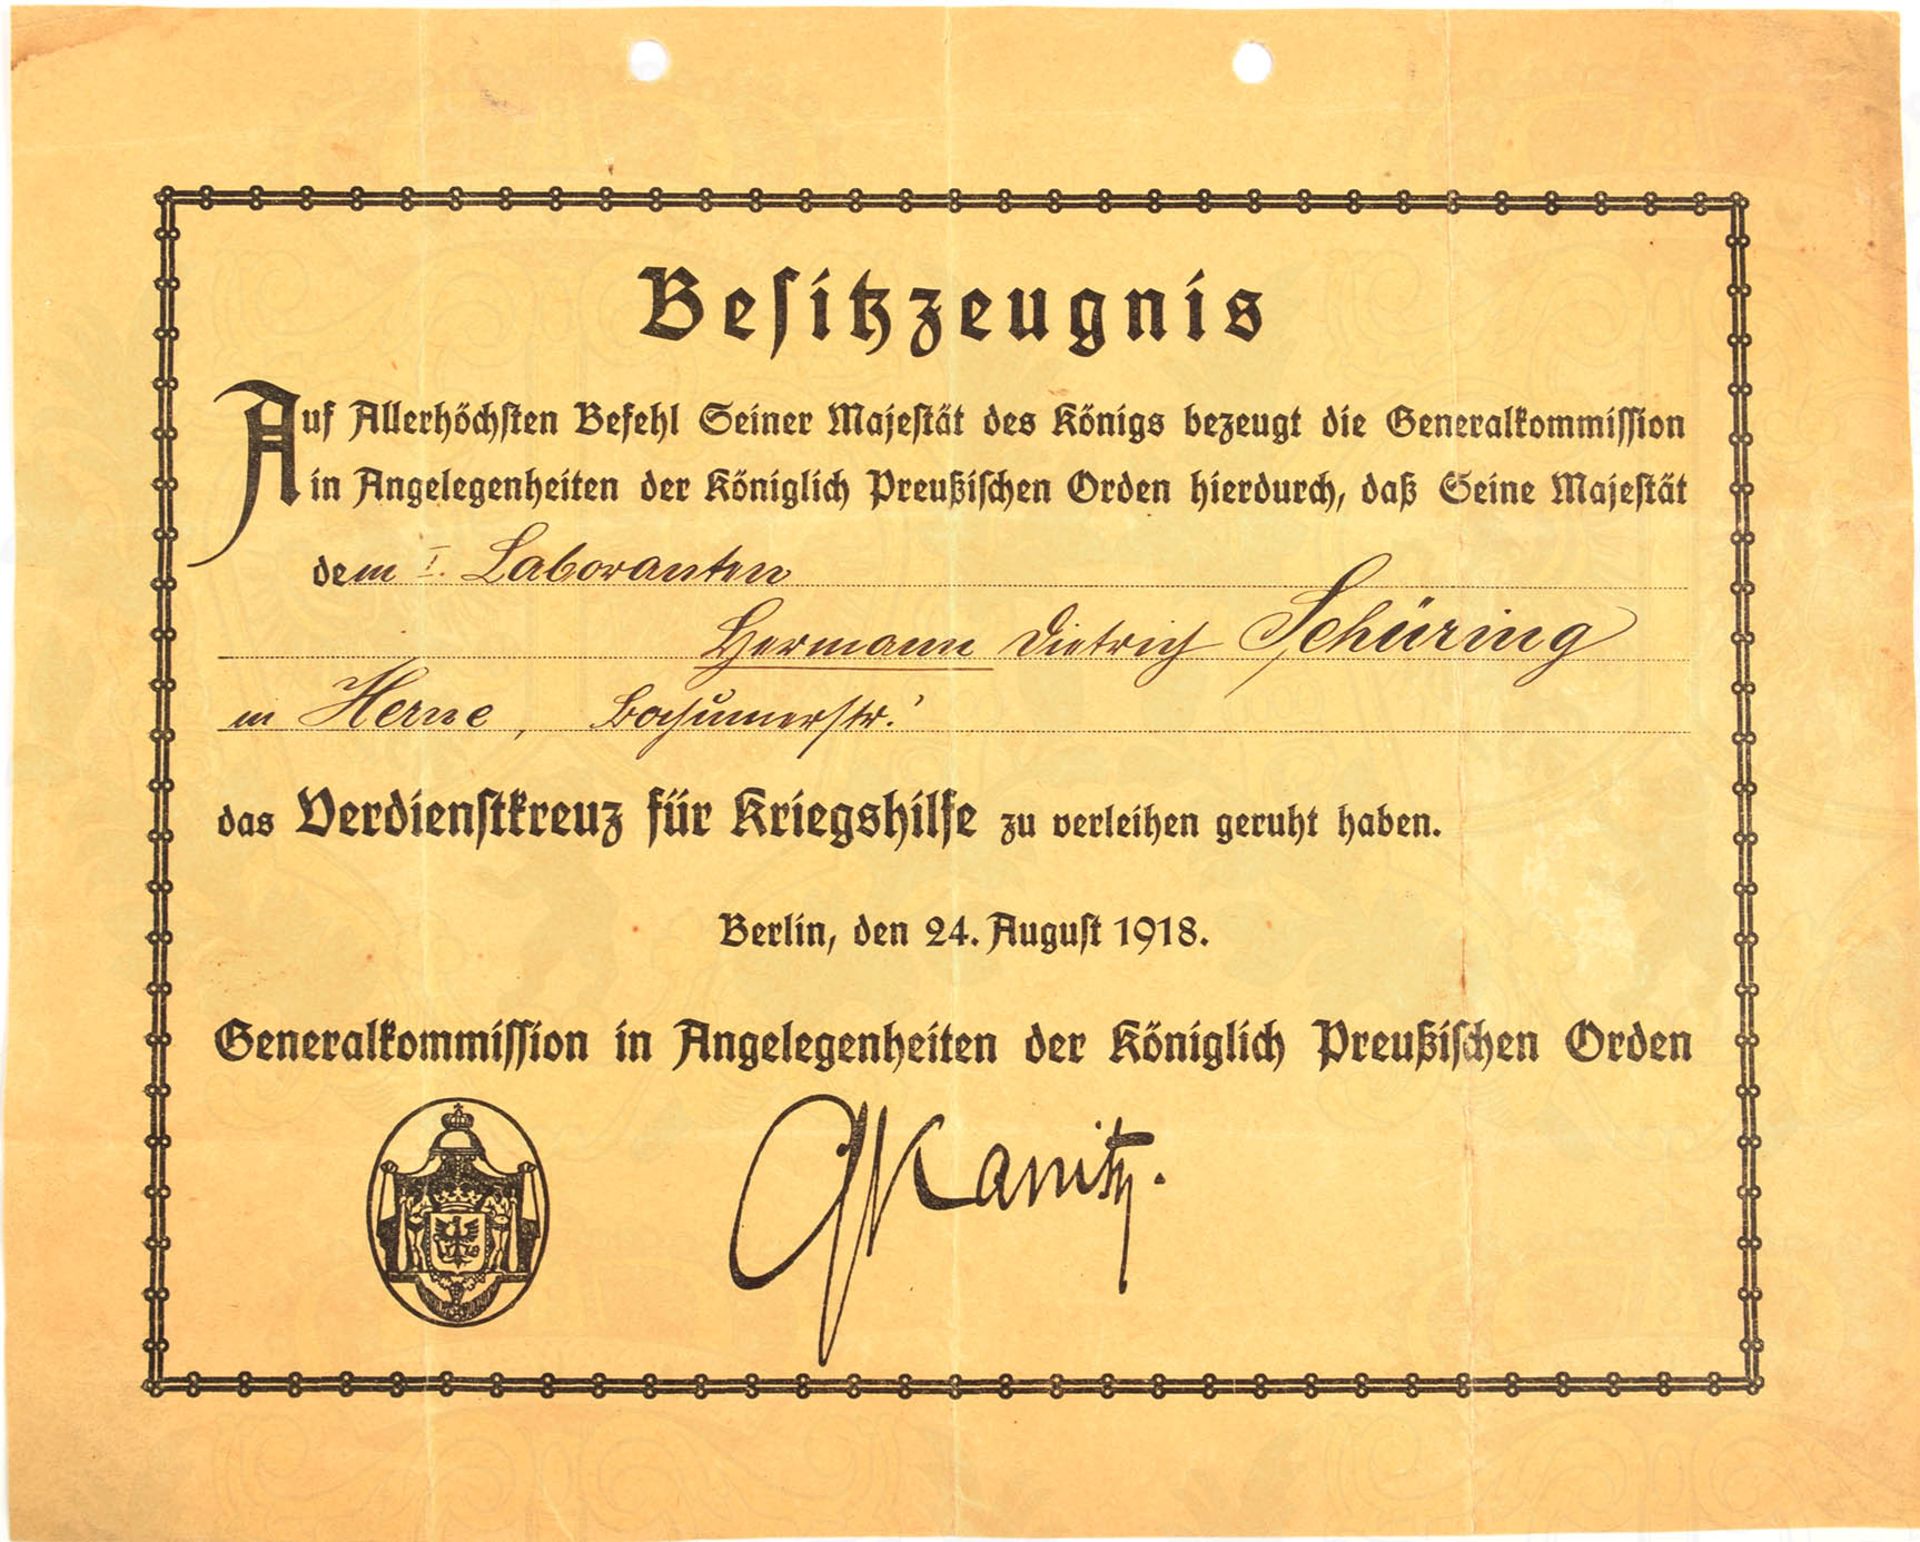 VU VERDIENSTKREUZ FÜR KRIEGSHILFSDIENST 1916, f. einen 1. Laboranten aus Herne, 24.8.1918, faks.